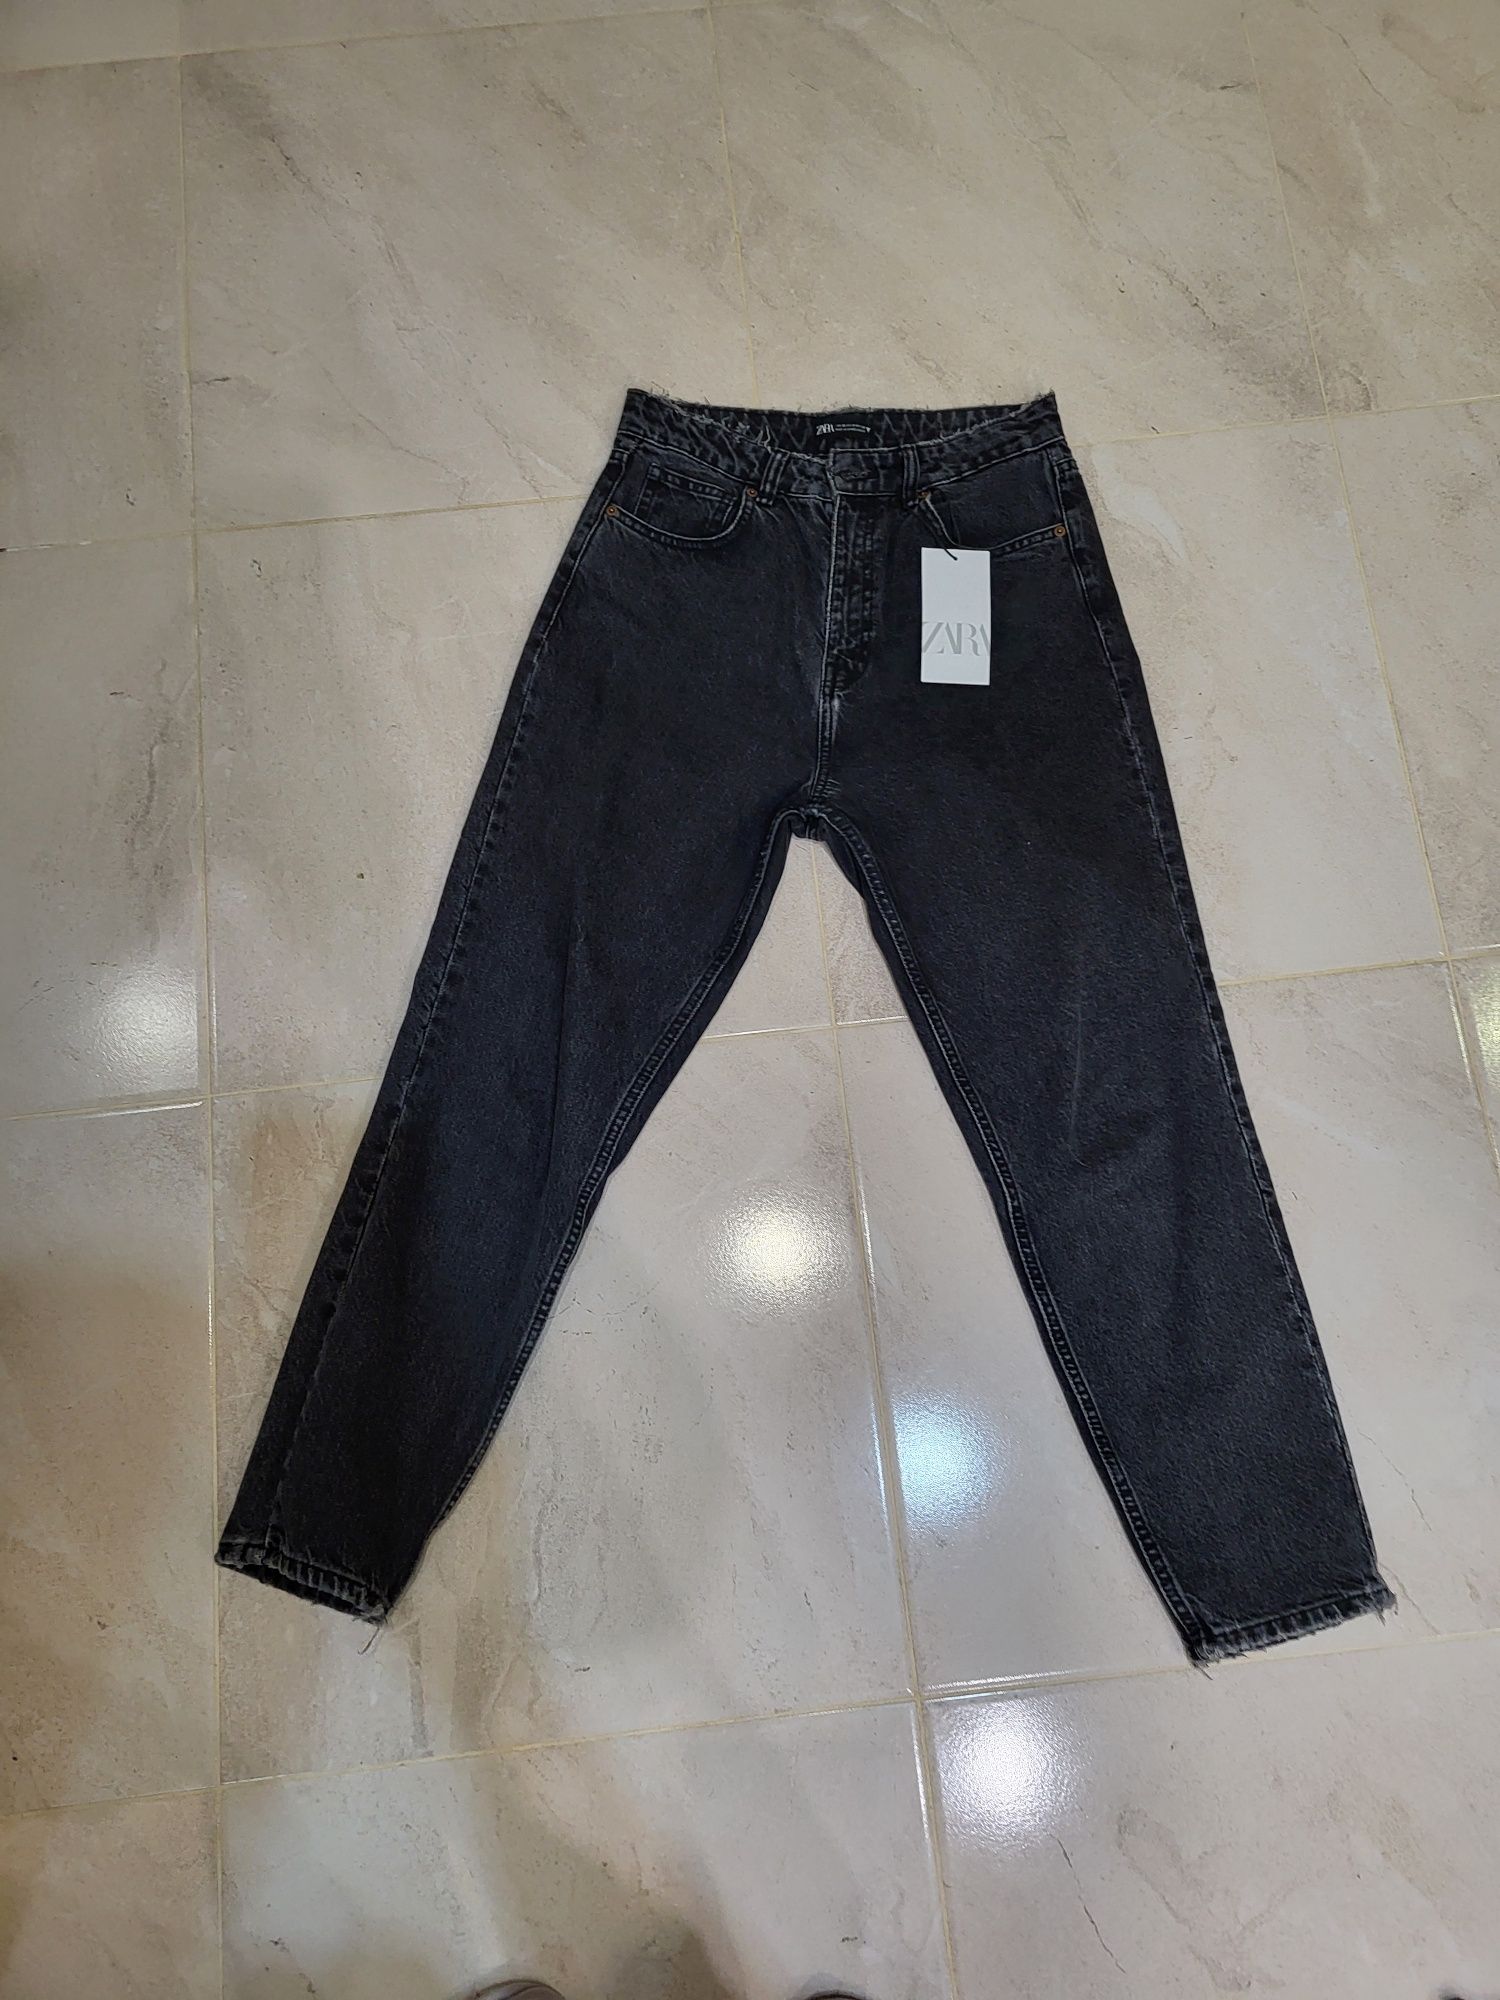 Новые джинсы фирмы Zara р. 38 чёрные.